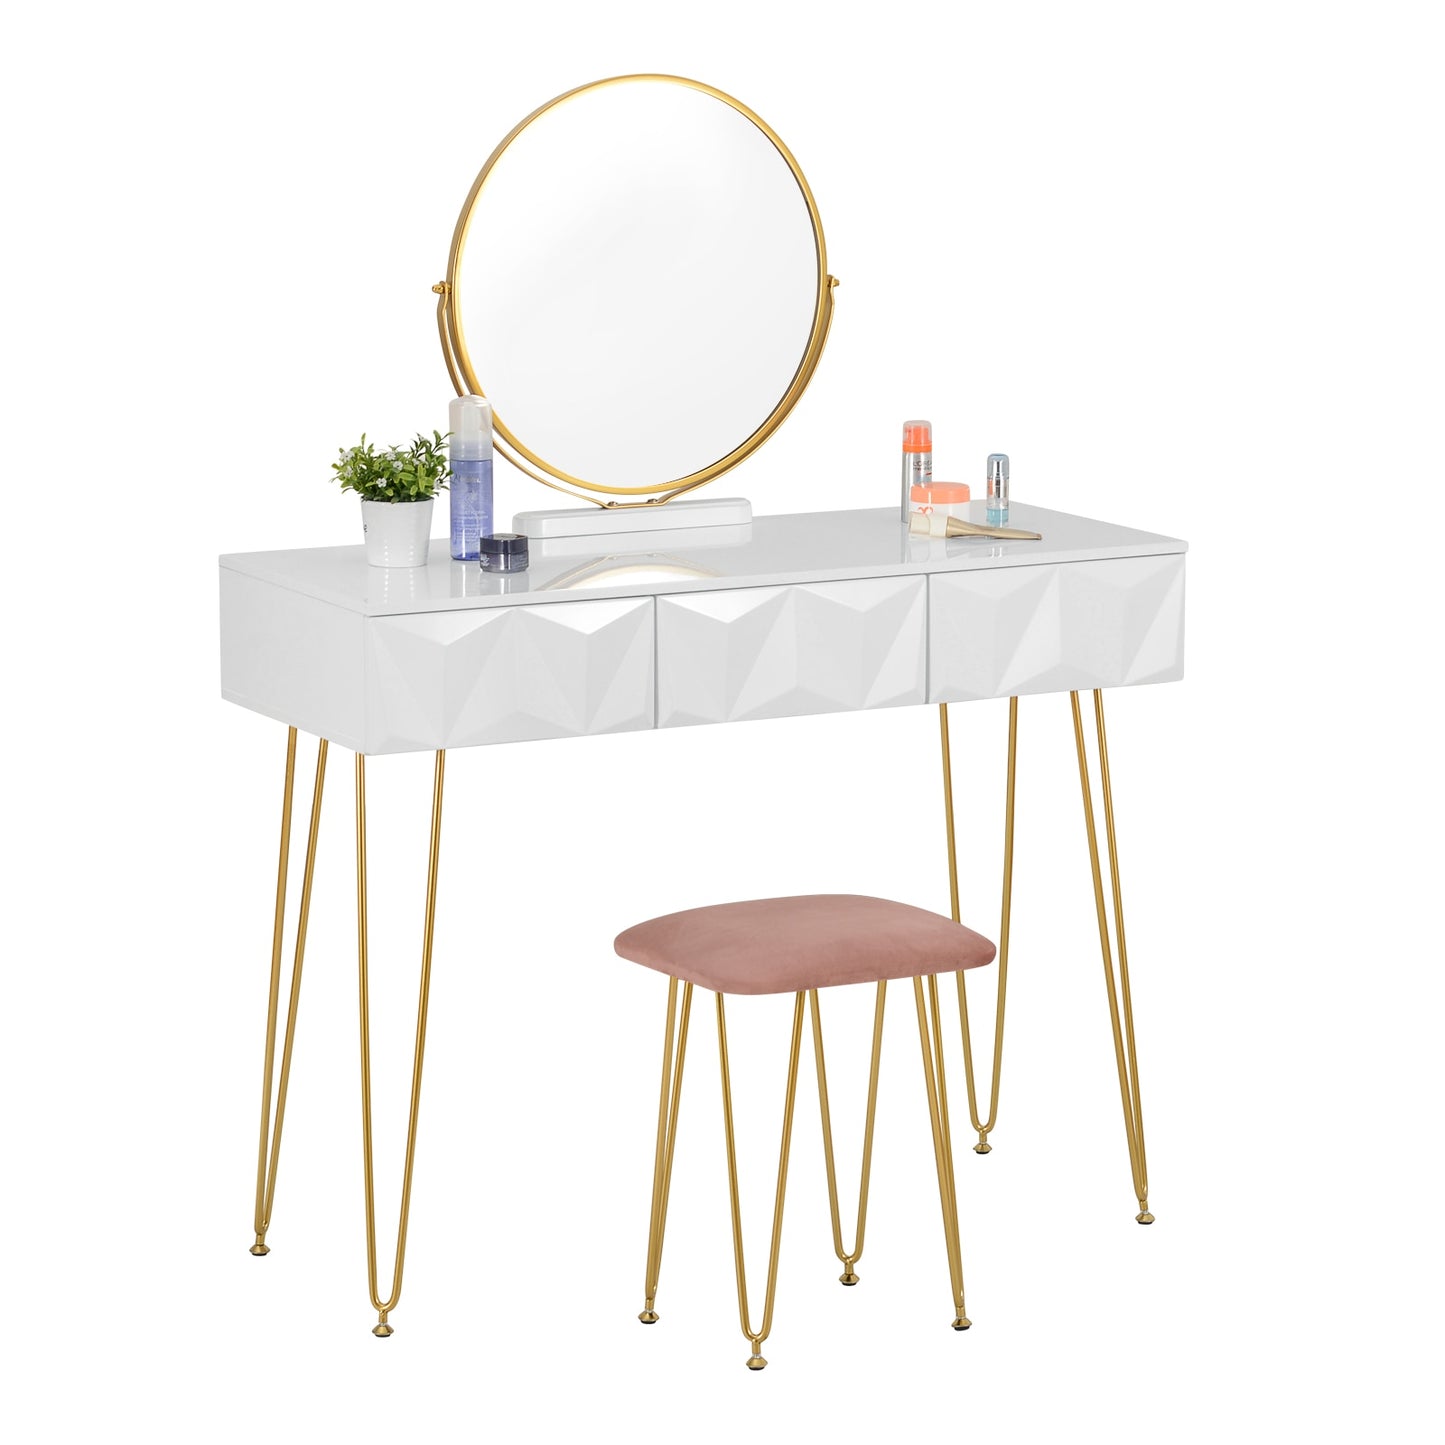 Schminktisch mit 360° drehbarem Spiegel, samtbezogenem Hocker, Make-up-Kosmetiktisch mit 3 Schubladen und 3D-Effekt für das Schlafzimmer weiß gold - Unique Outlet